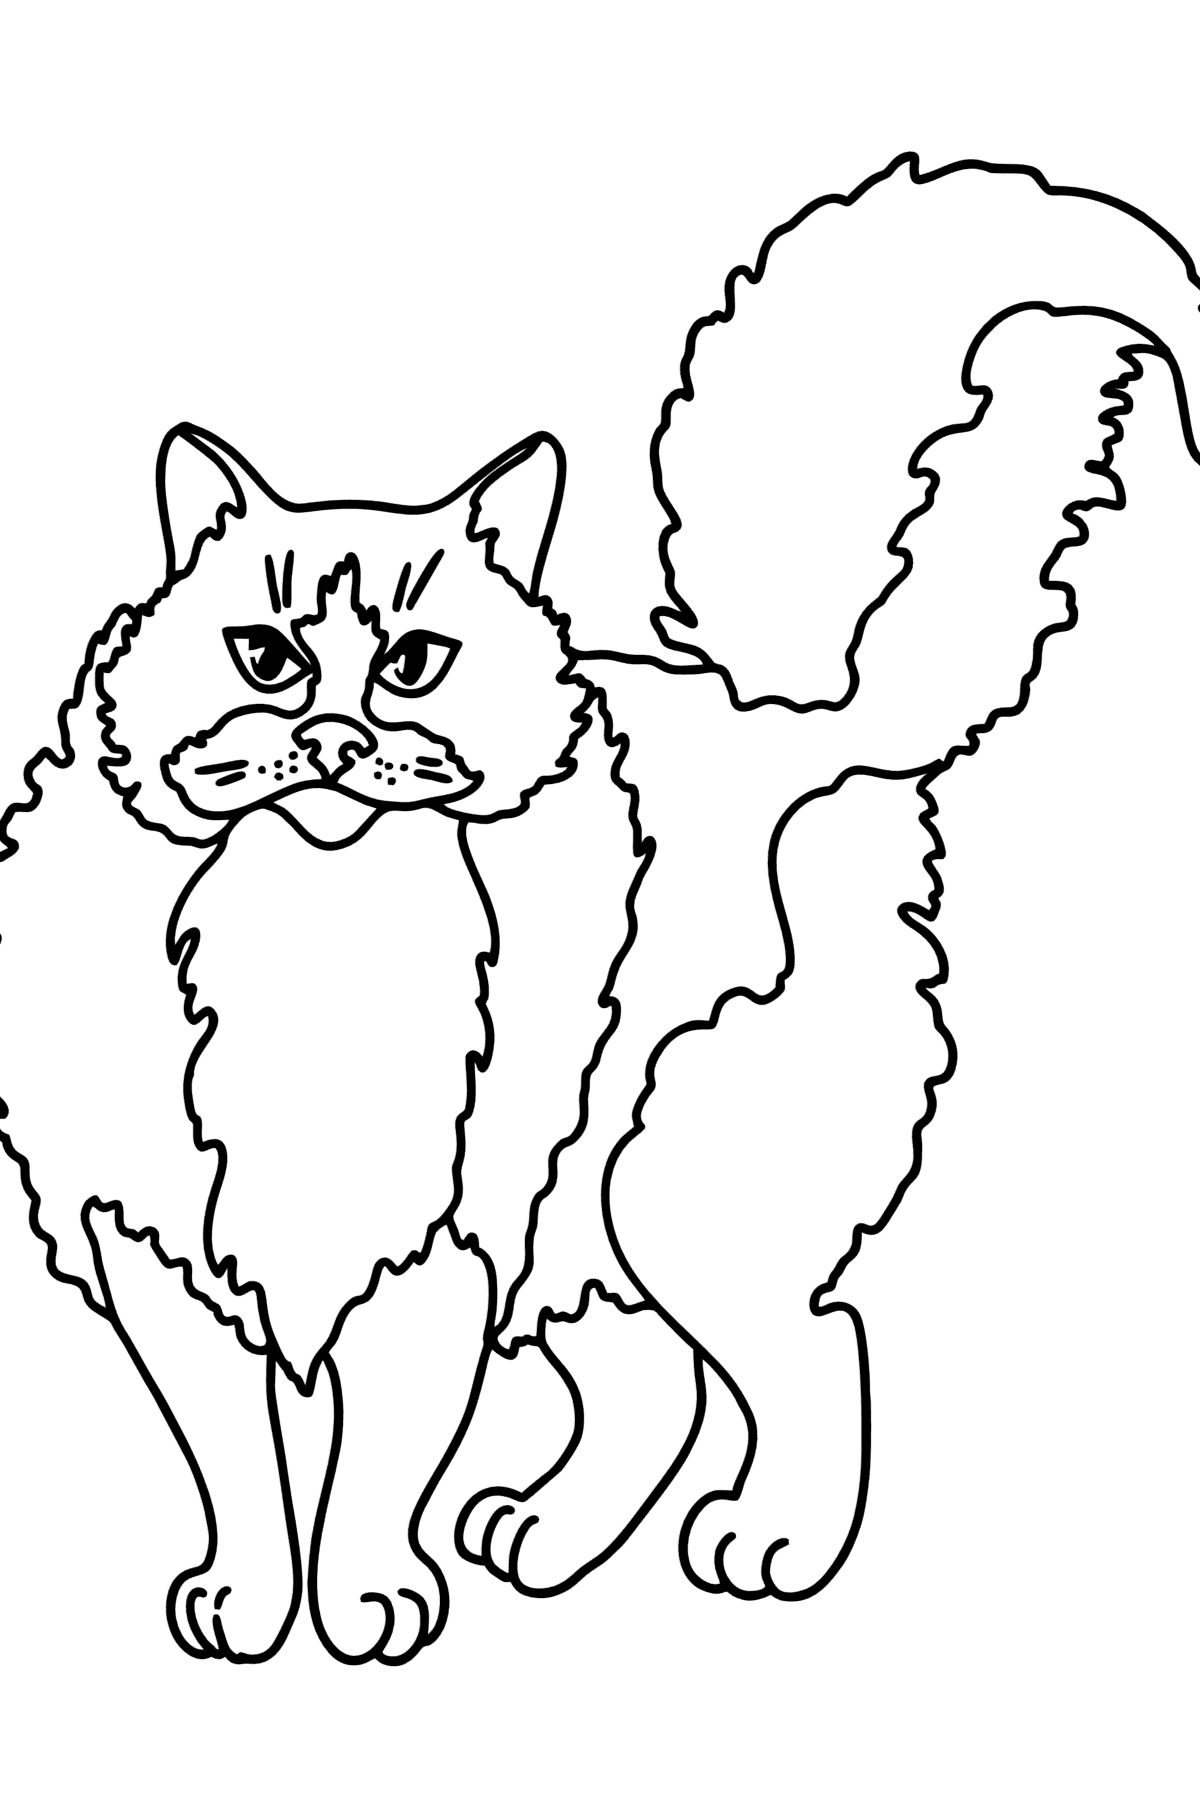 Desenho para colorir do Gato Ragdoll - Imagens para Colorir para Crianças